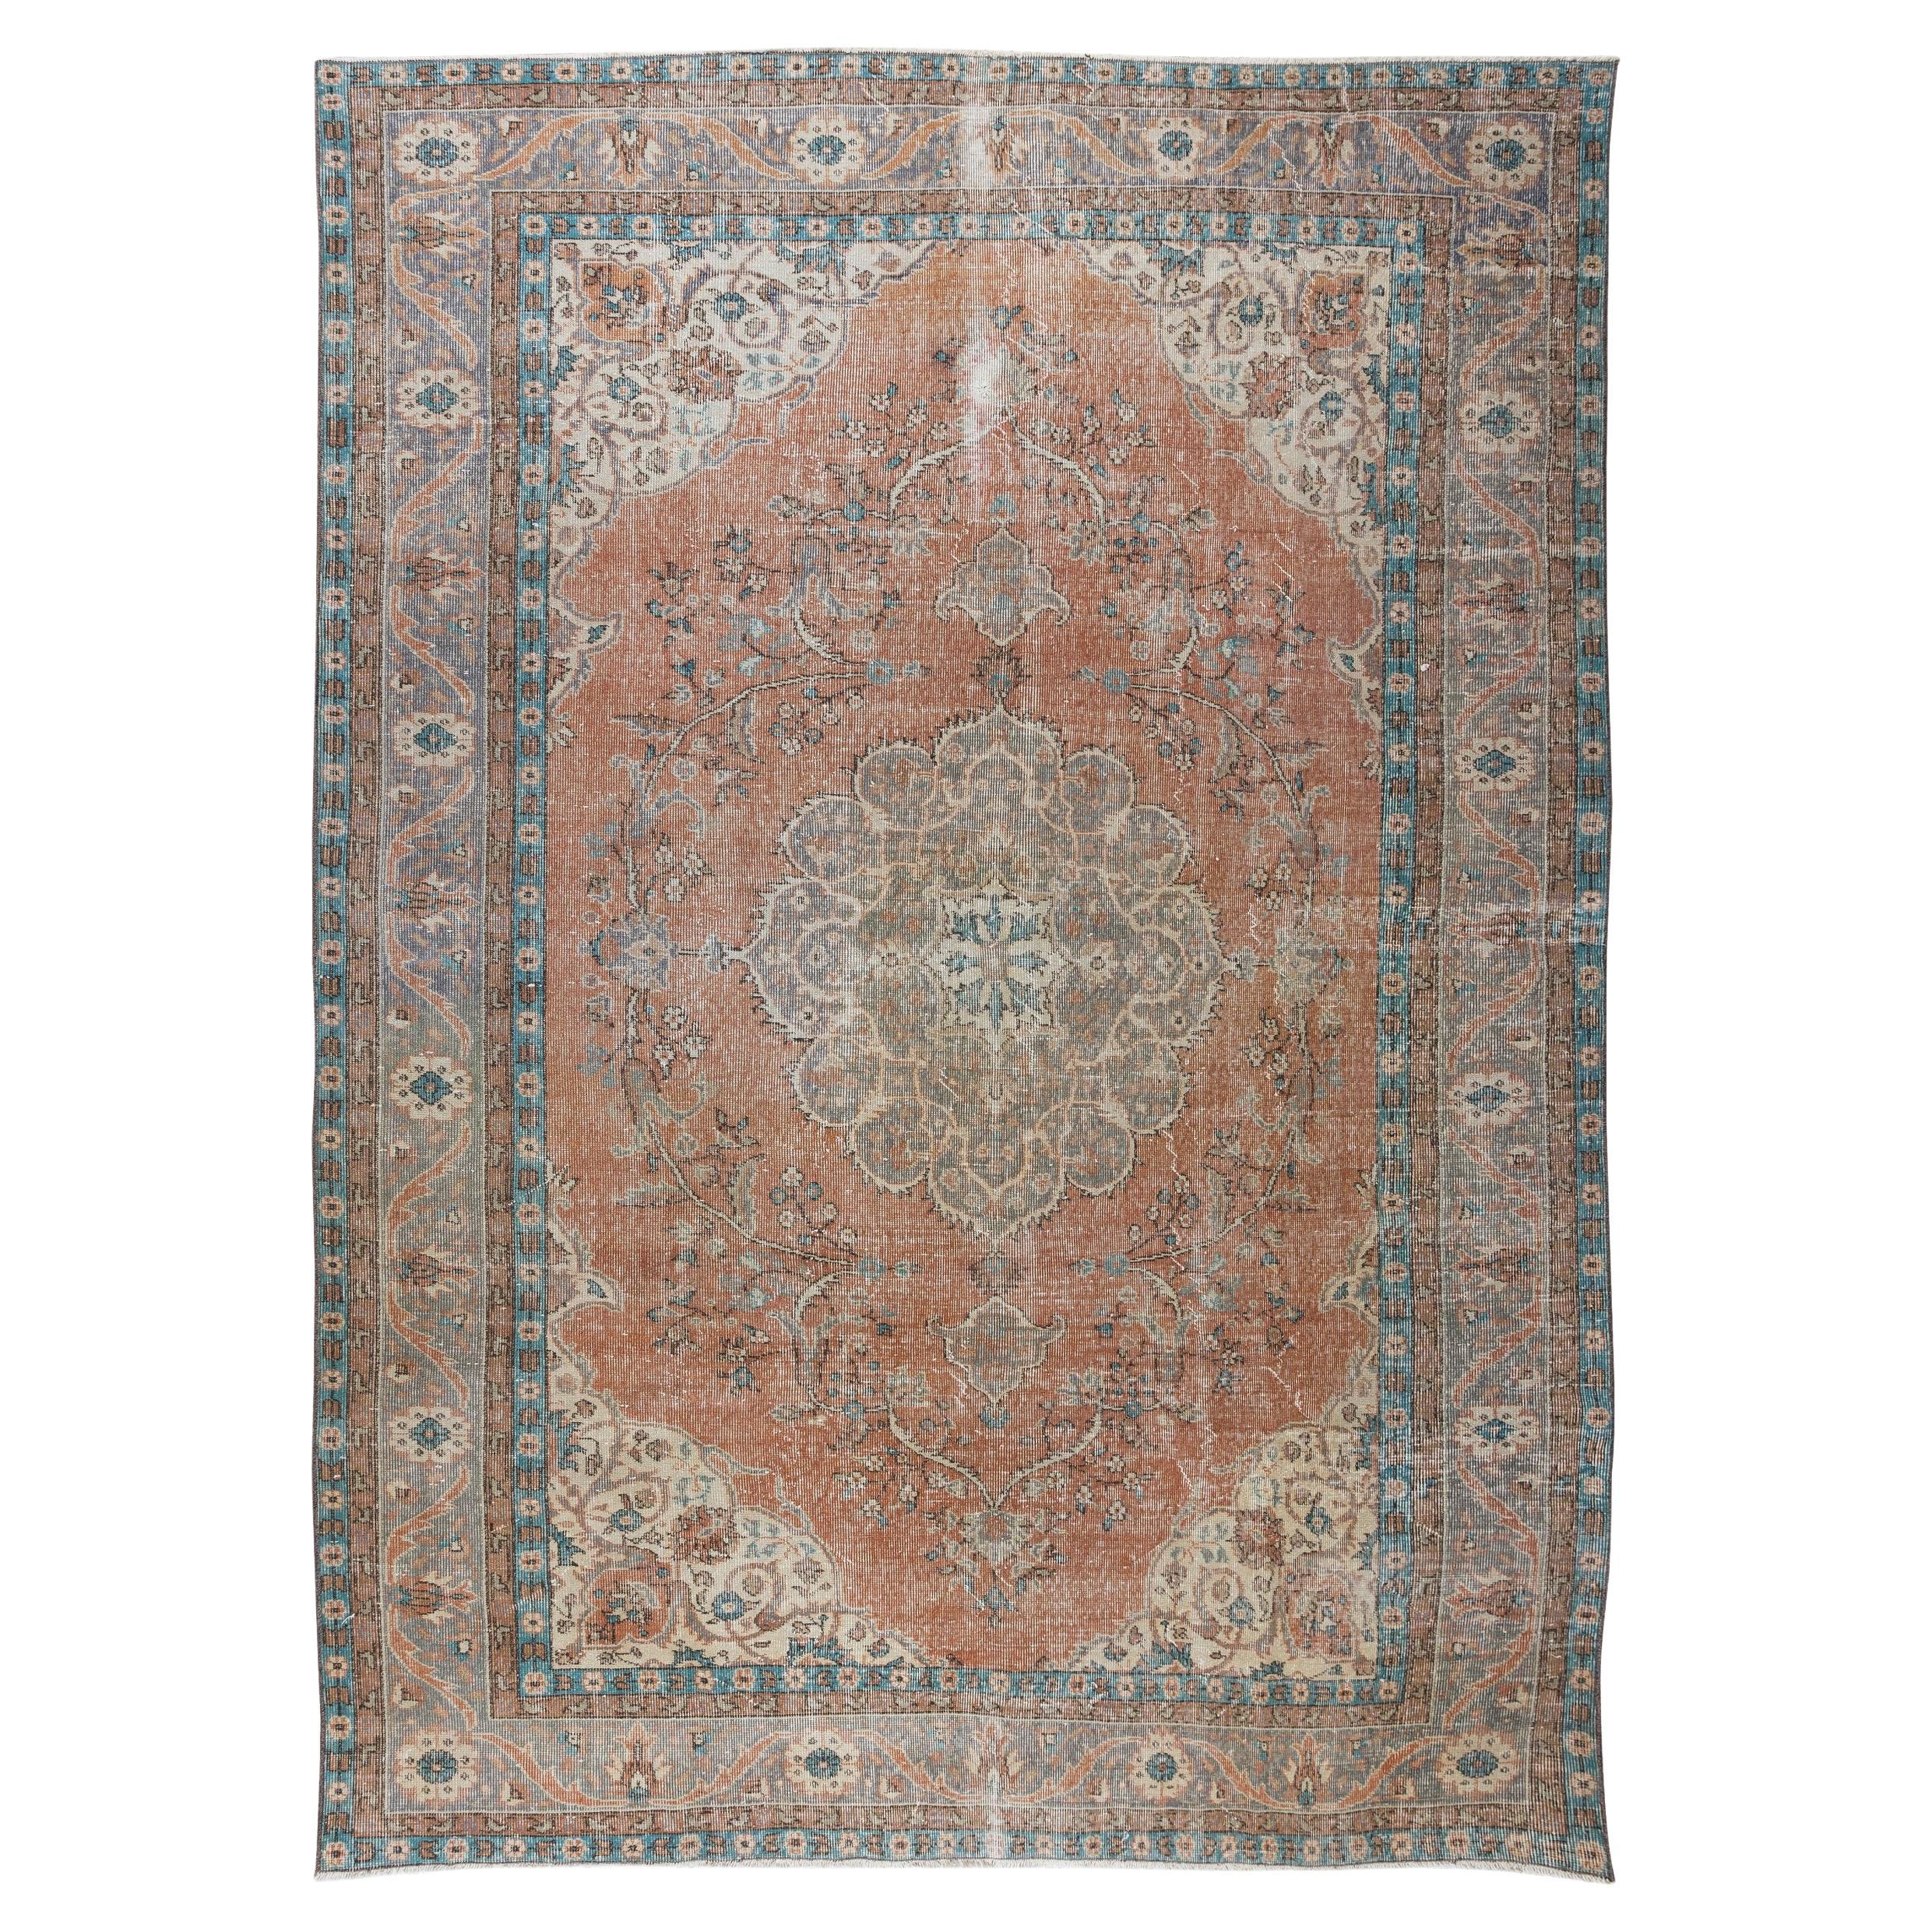 Tapis turc ancien unique en son genre, tapis traditionnel fait à la main vintage